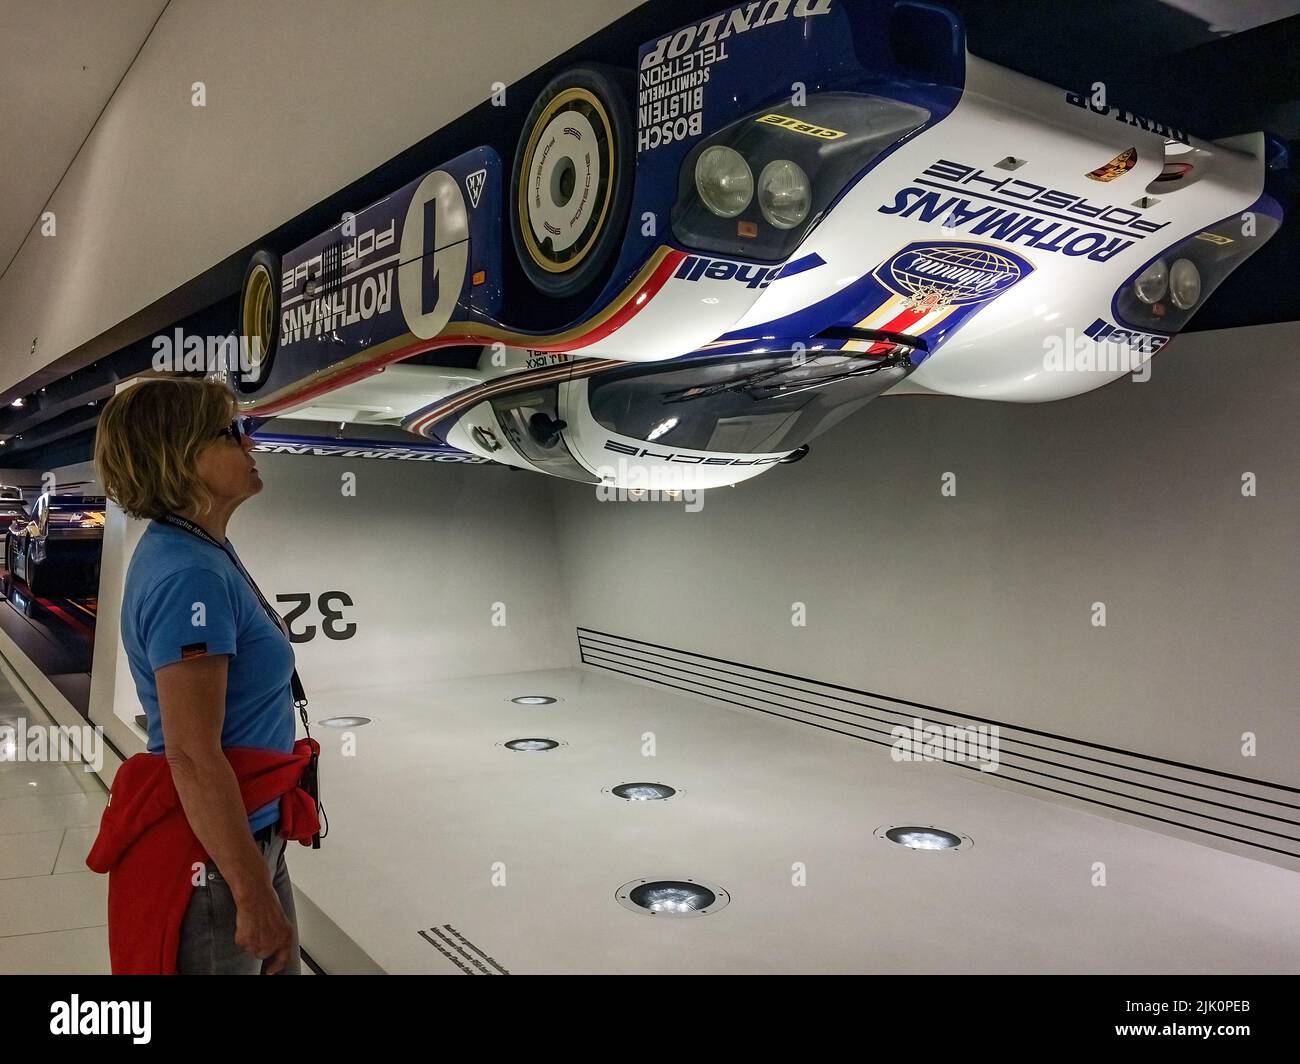 historischer Rennwagen Porsche 956 hängt mit simulierte Bodenhaftung BEI Geschwindigkeit von 321,4 kmIh kopfüber unter Decke, Musée Porsche, GER Banque D'Images